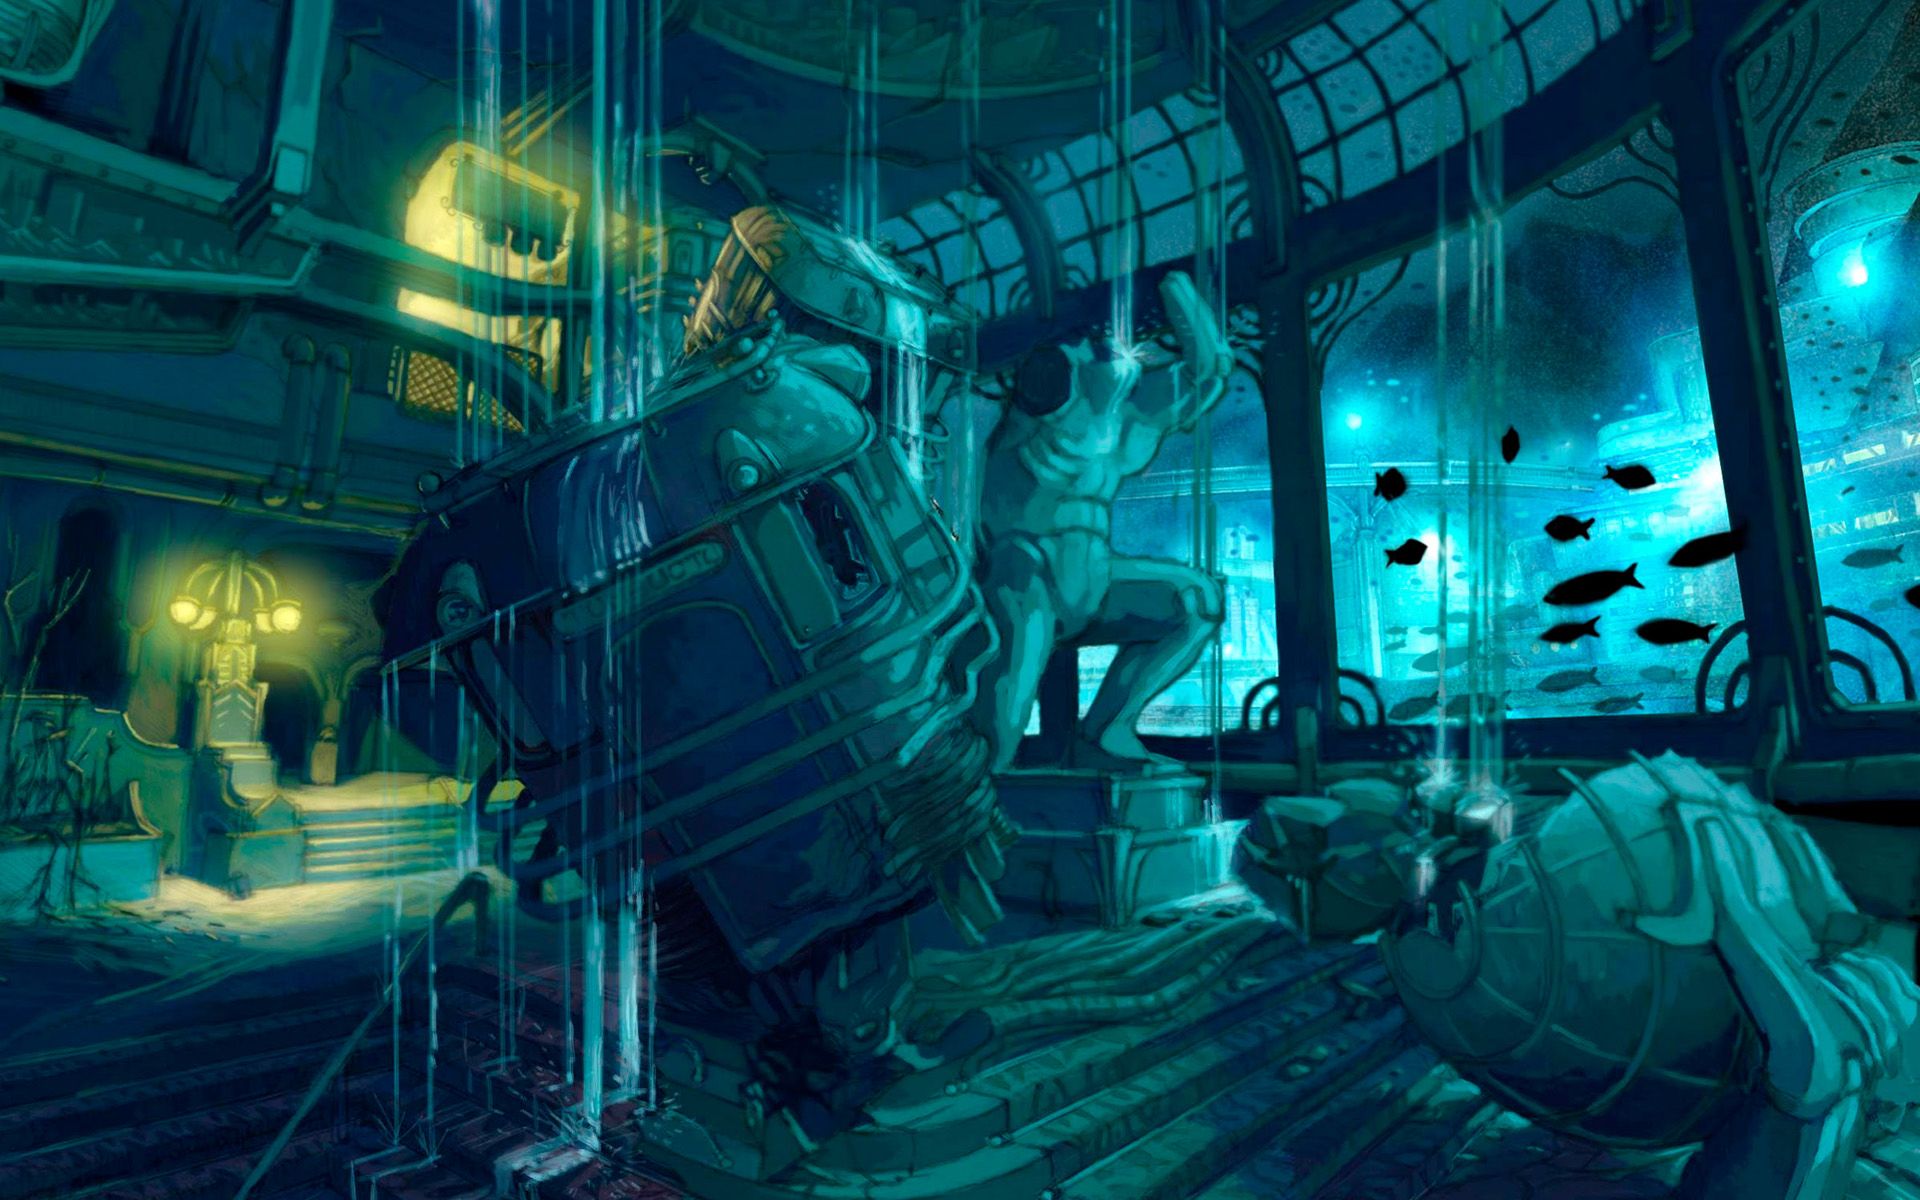 BioShock 2 Background. BioShock Wallpaper Text, BioShock Wallpaper and BioShock Wallpaper 1080P